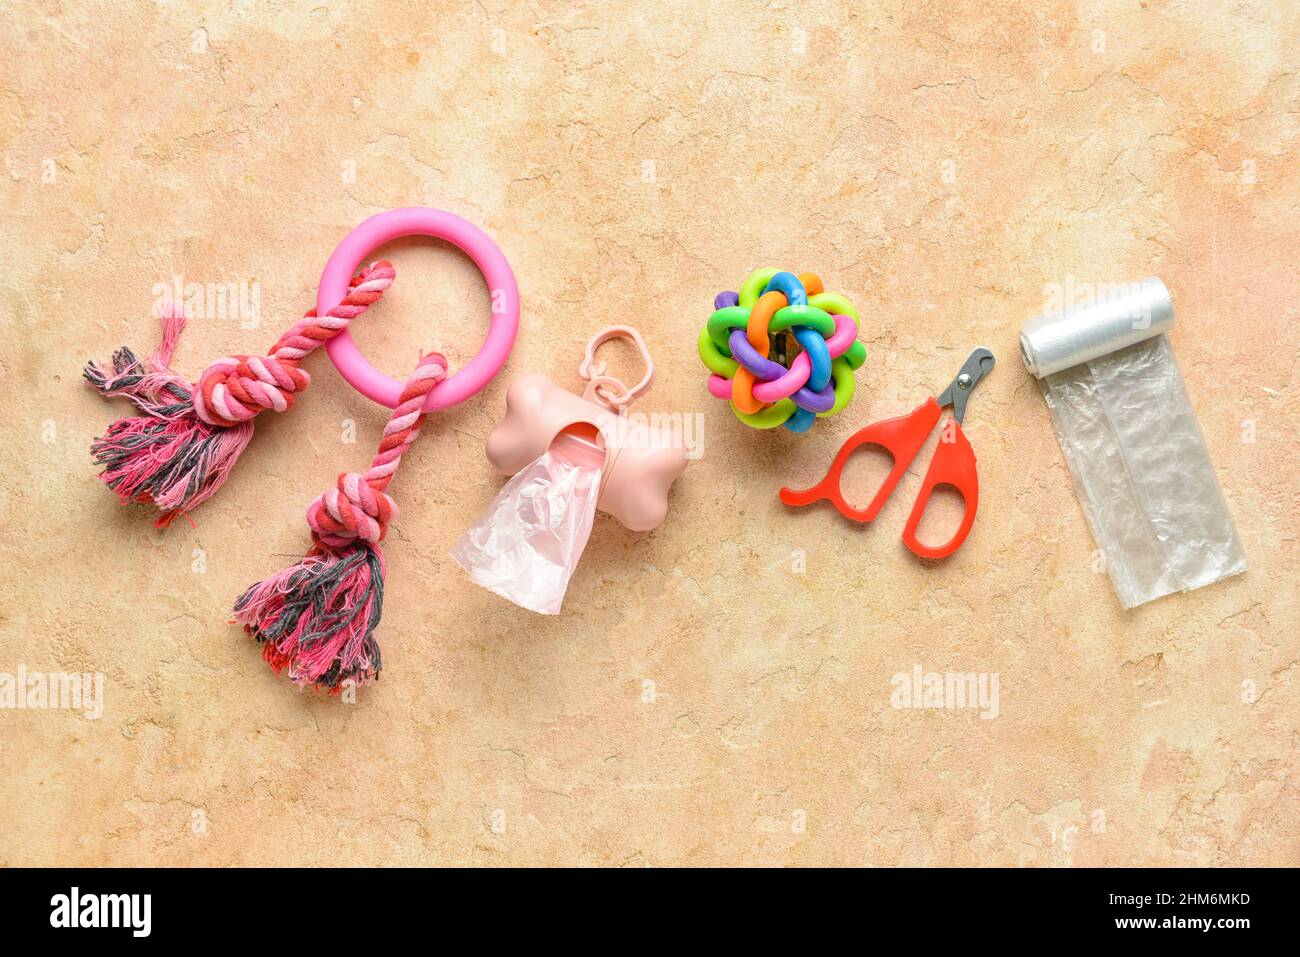 PET-Abfallbeutel, Nagelschneider und Spielzeug auf farbigem Hintergrund Stockfoto